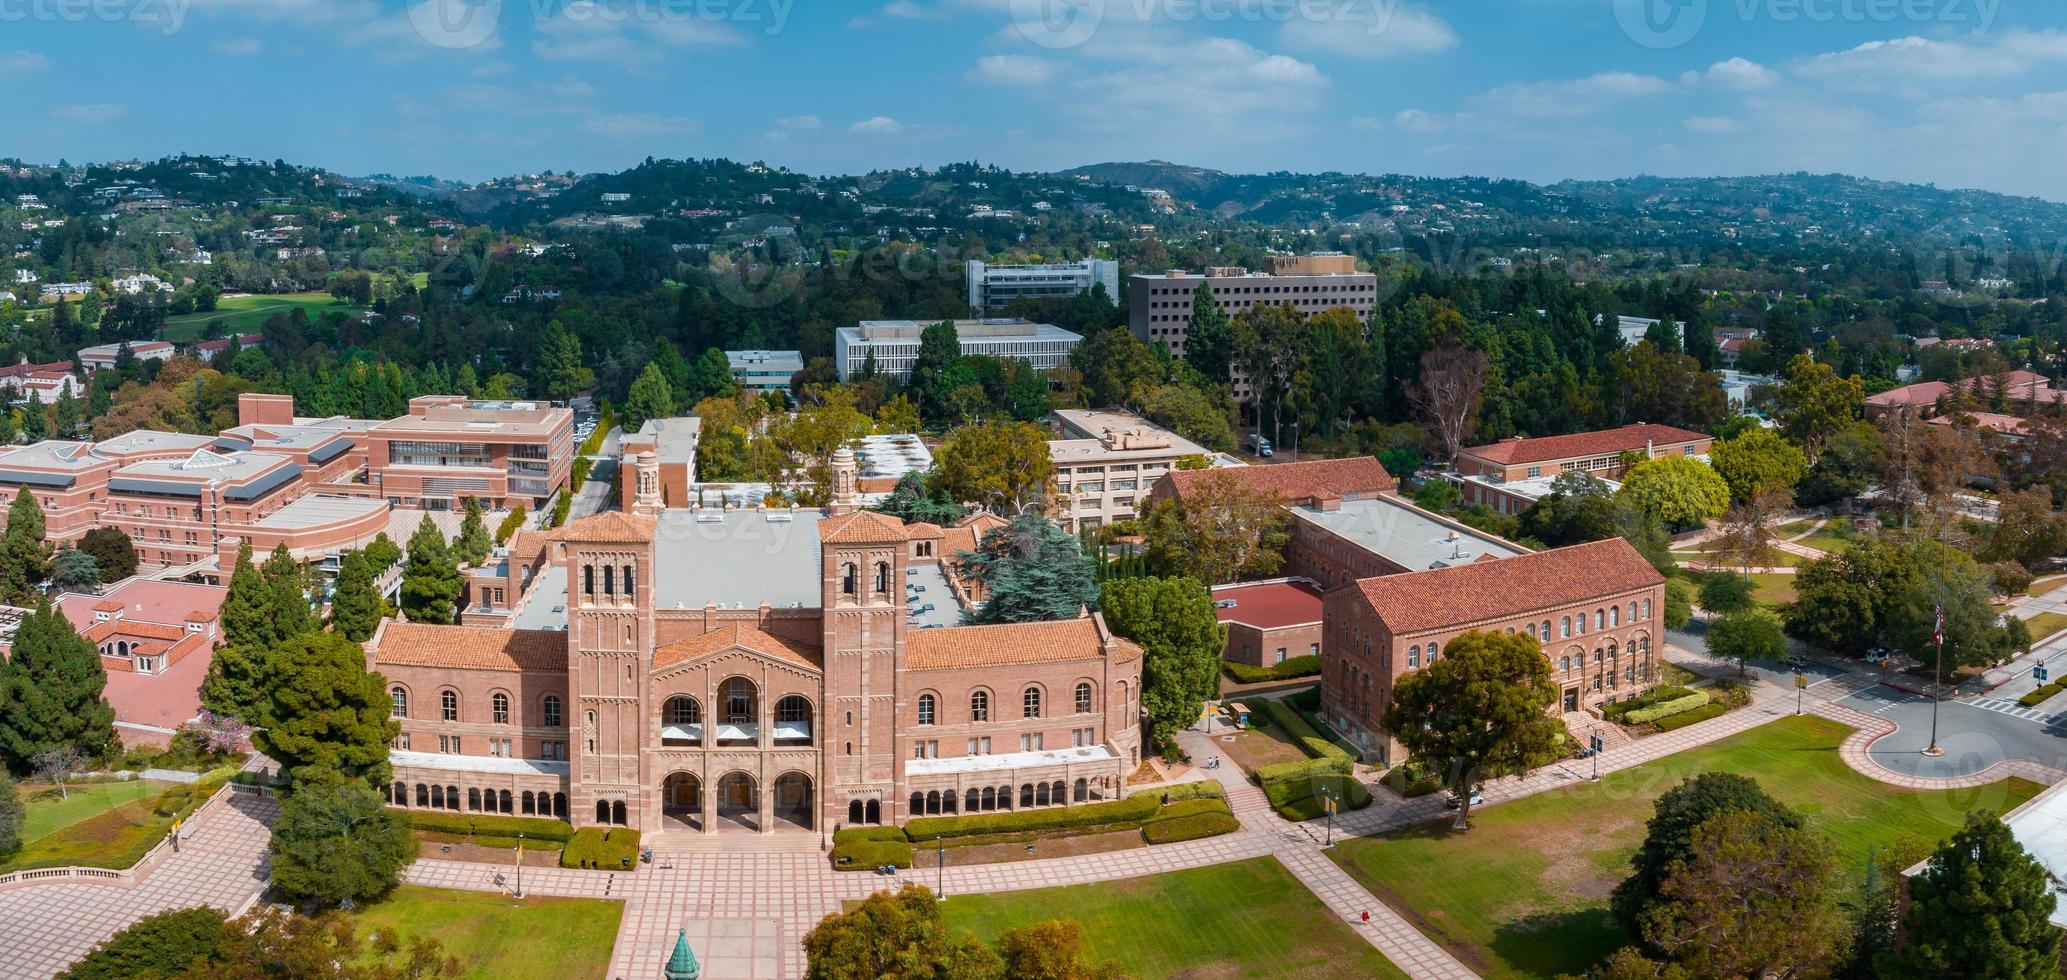 vista aerea del royce hall en la universidad de california, los angeles foto